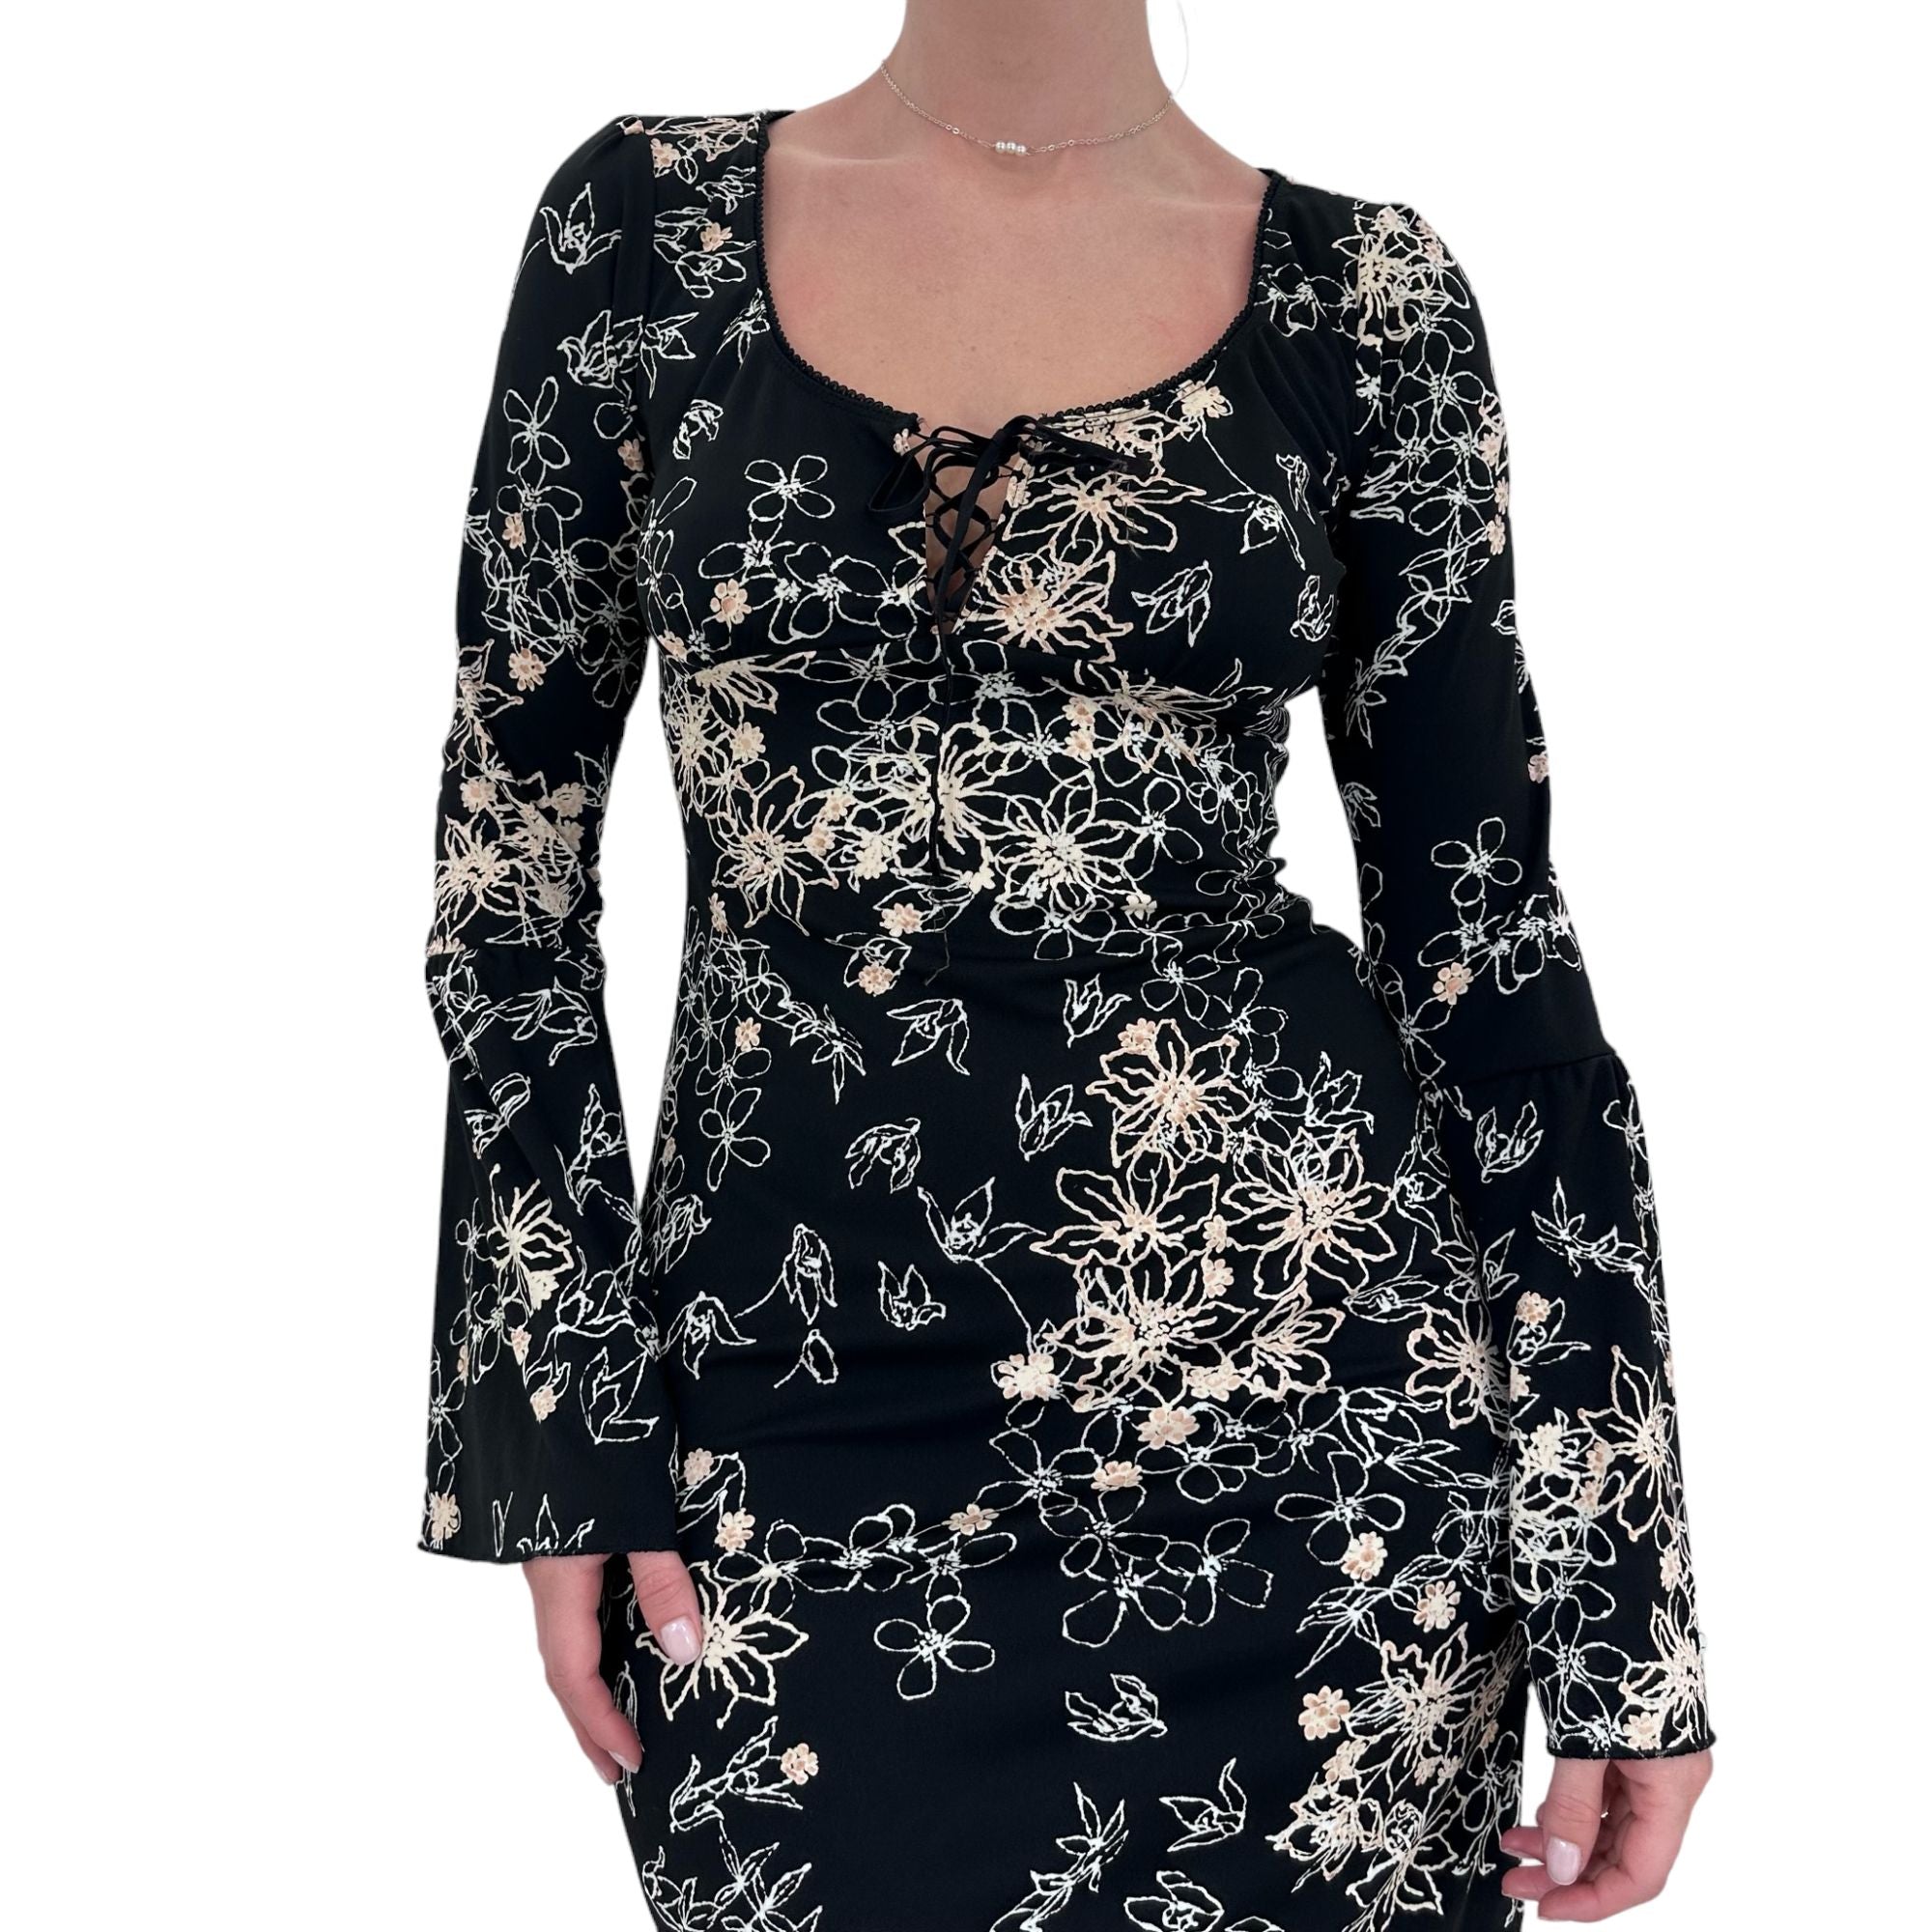 Y2k Vintage Black White + Beige Floral Long Sleeves Dress [M]